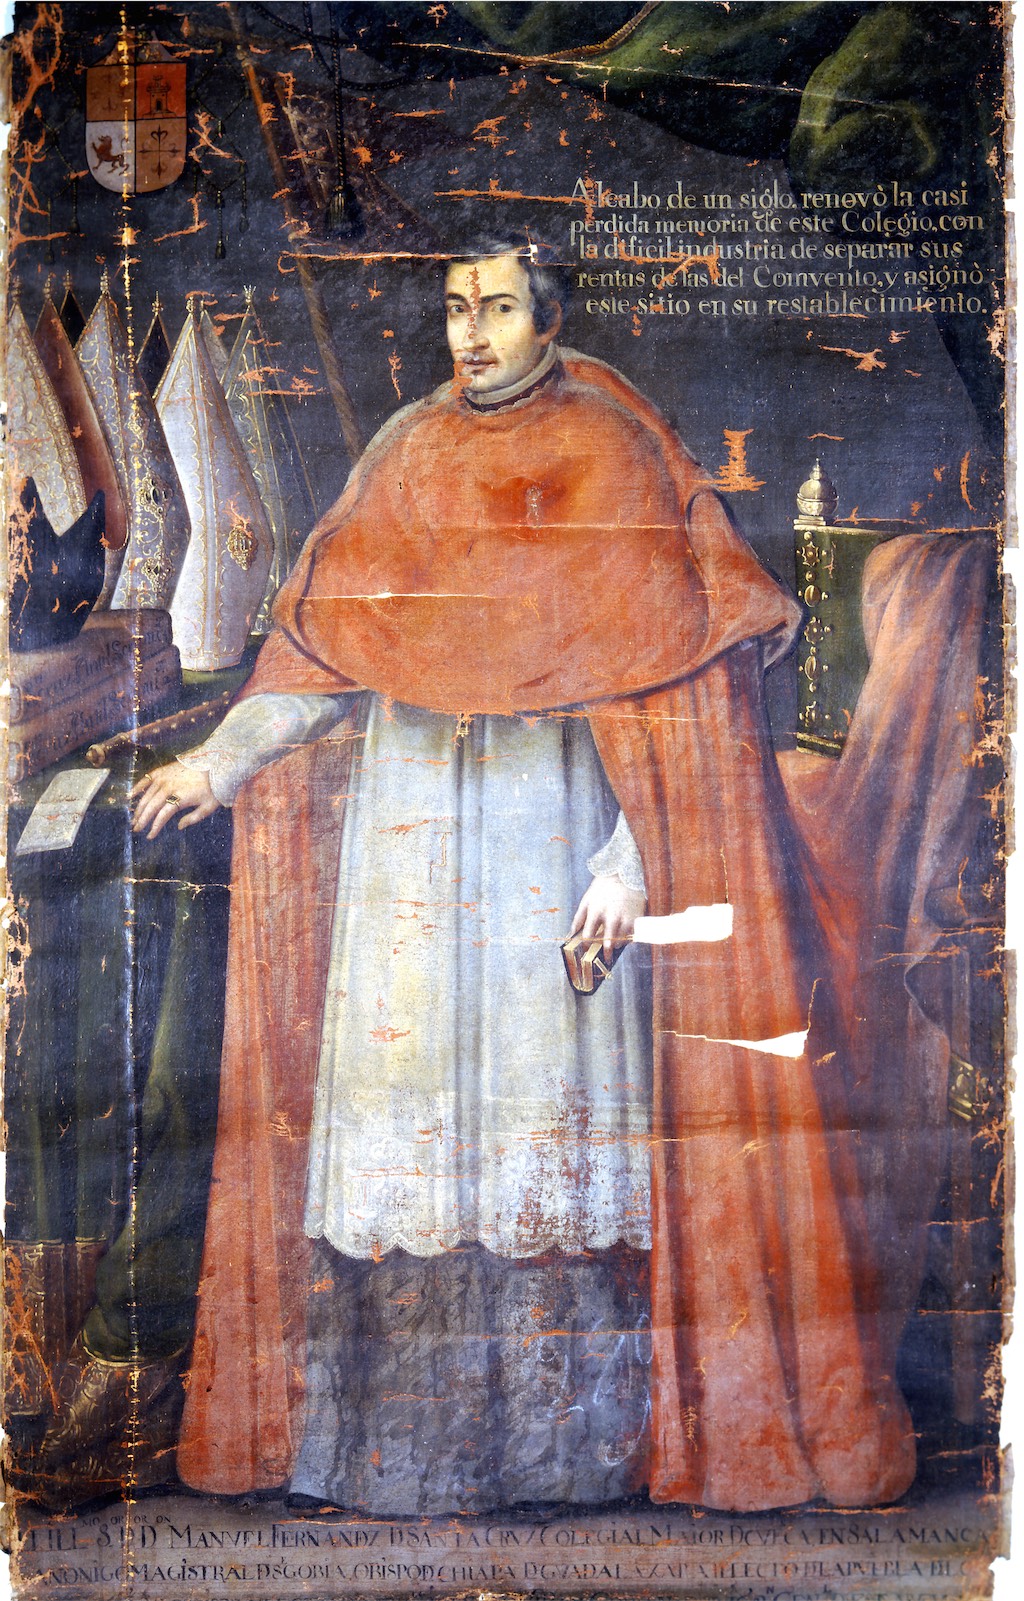 Manuel Fernández de Santa Cruz y Sahagún